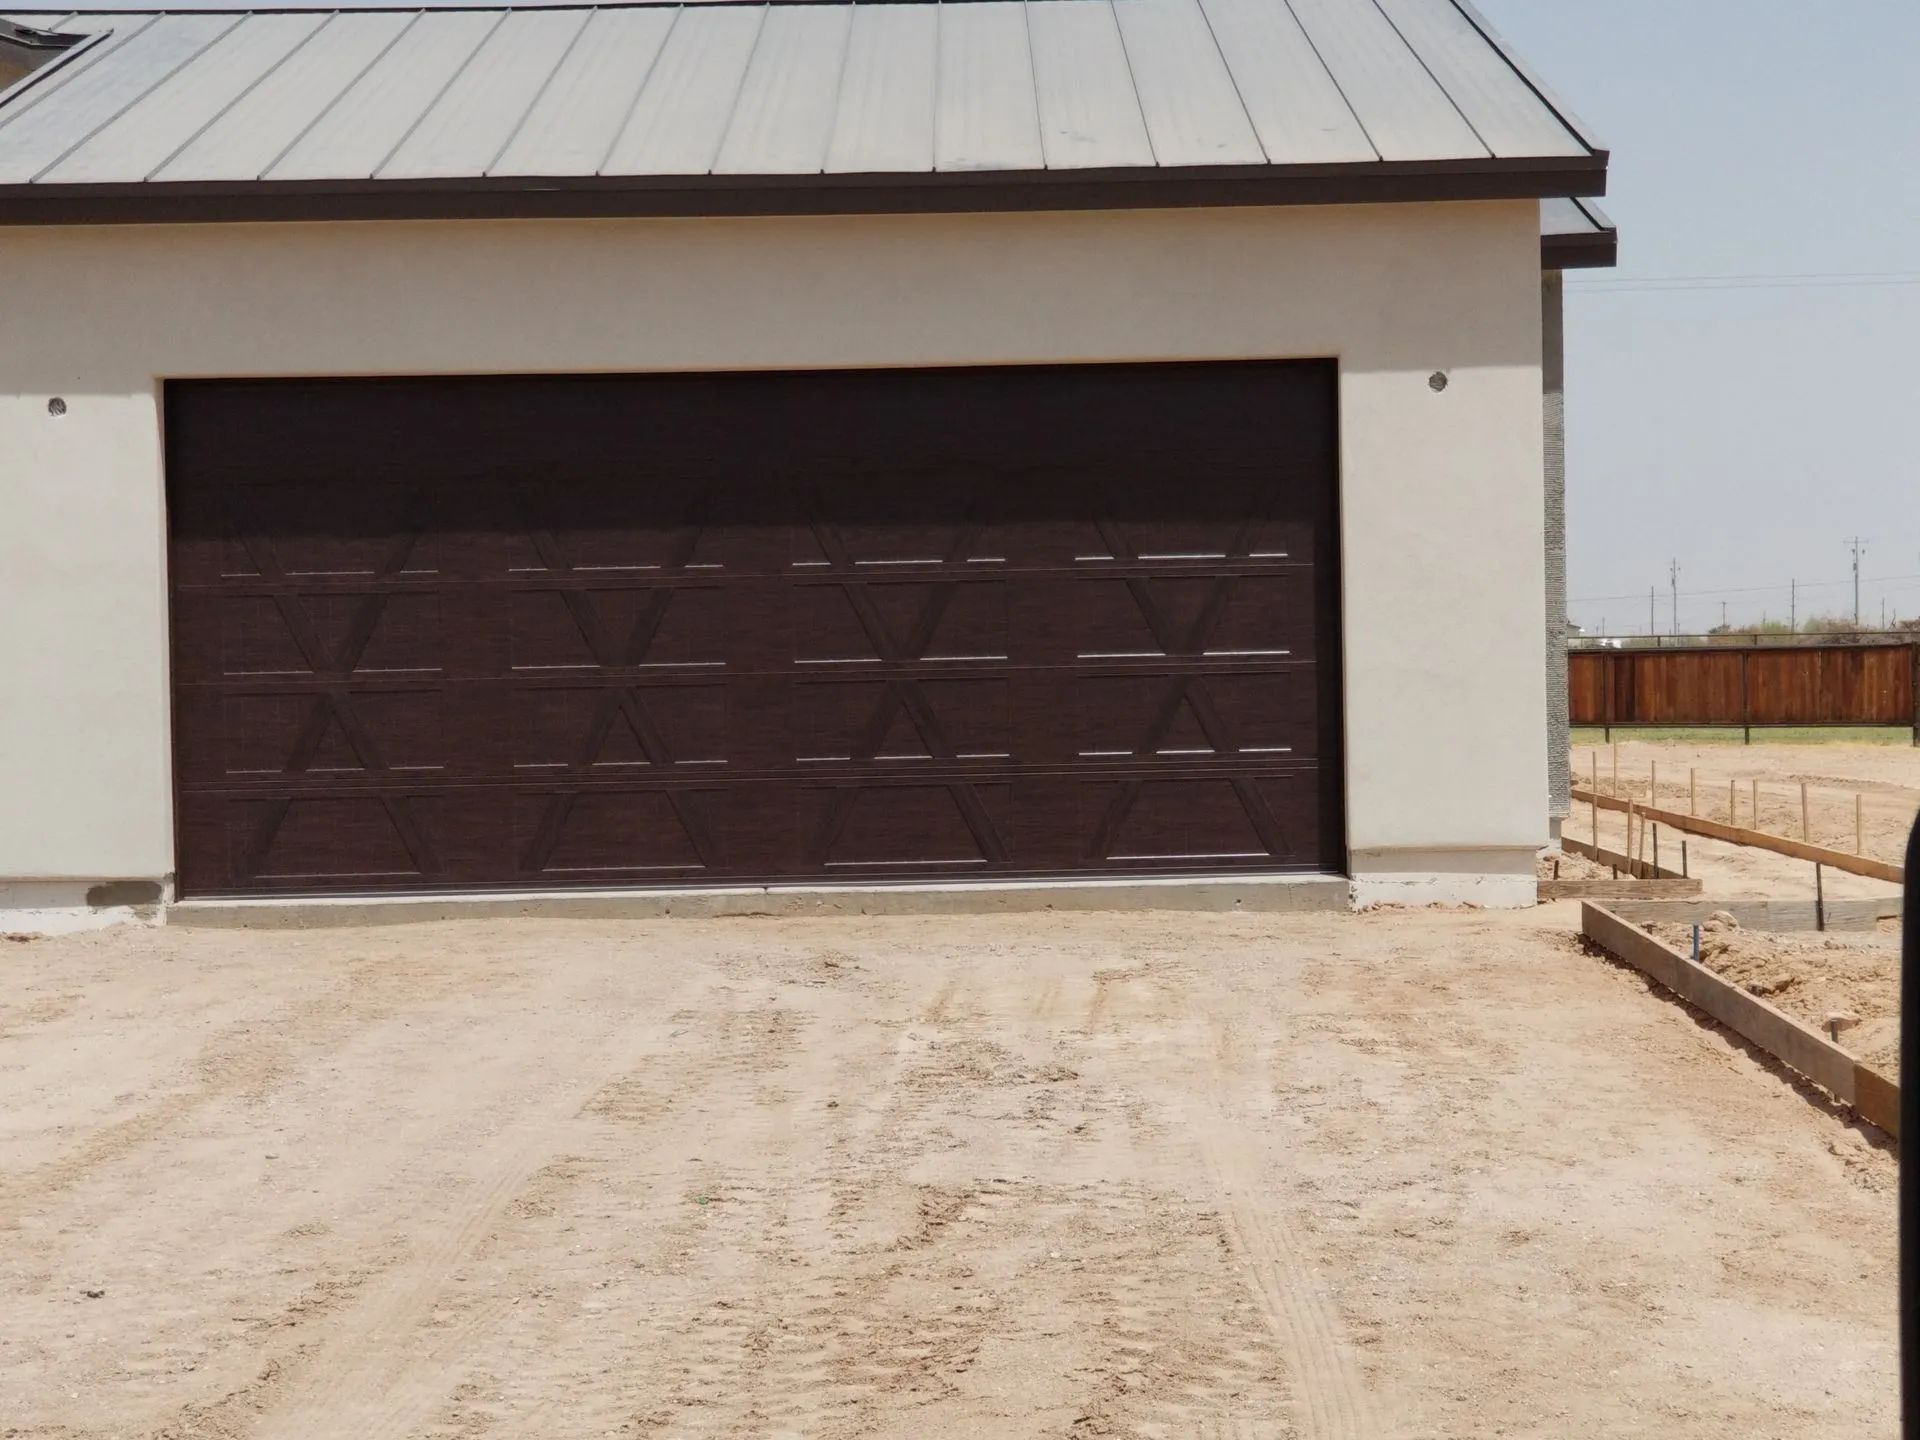 Sleek and modern Avondale garage door installation in progress.